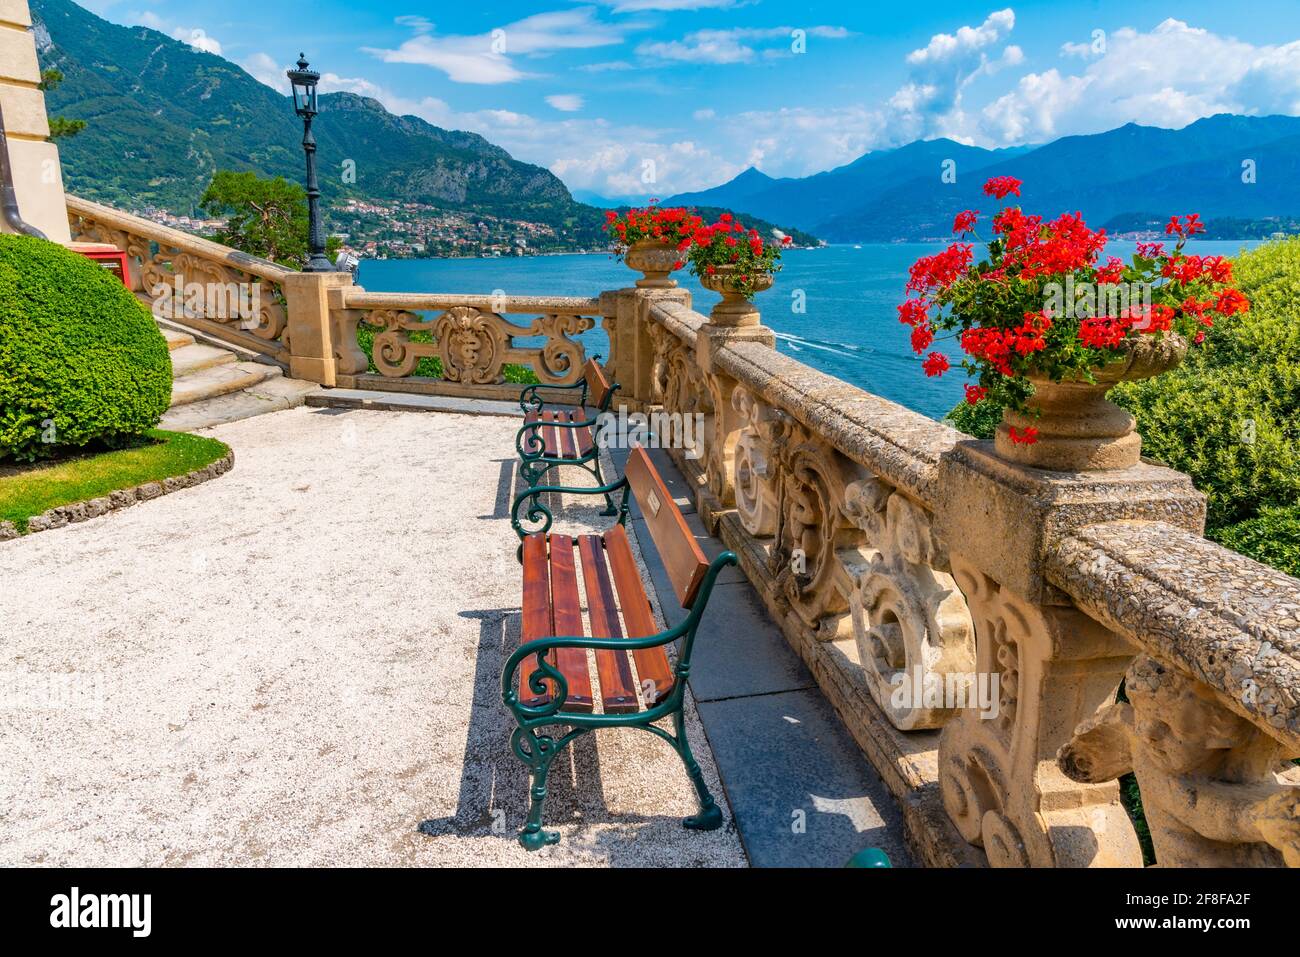 Patio of Villa del Balbianello at lake Como, Italy Stock Photo